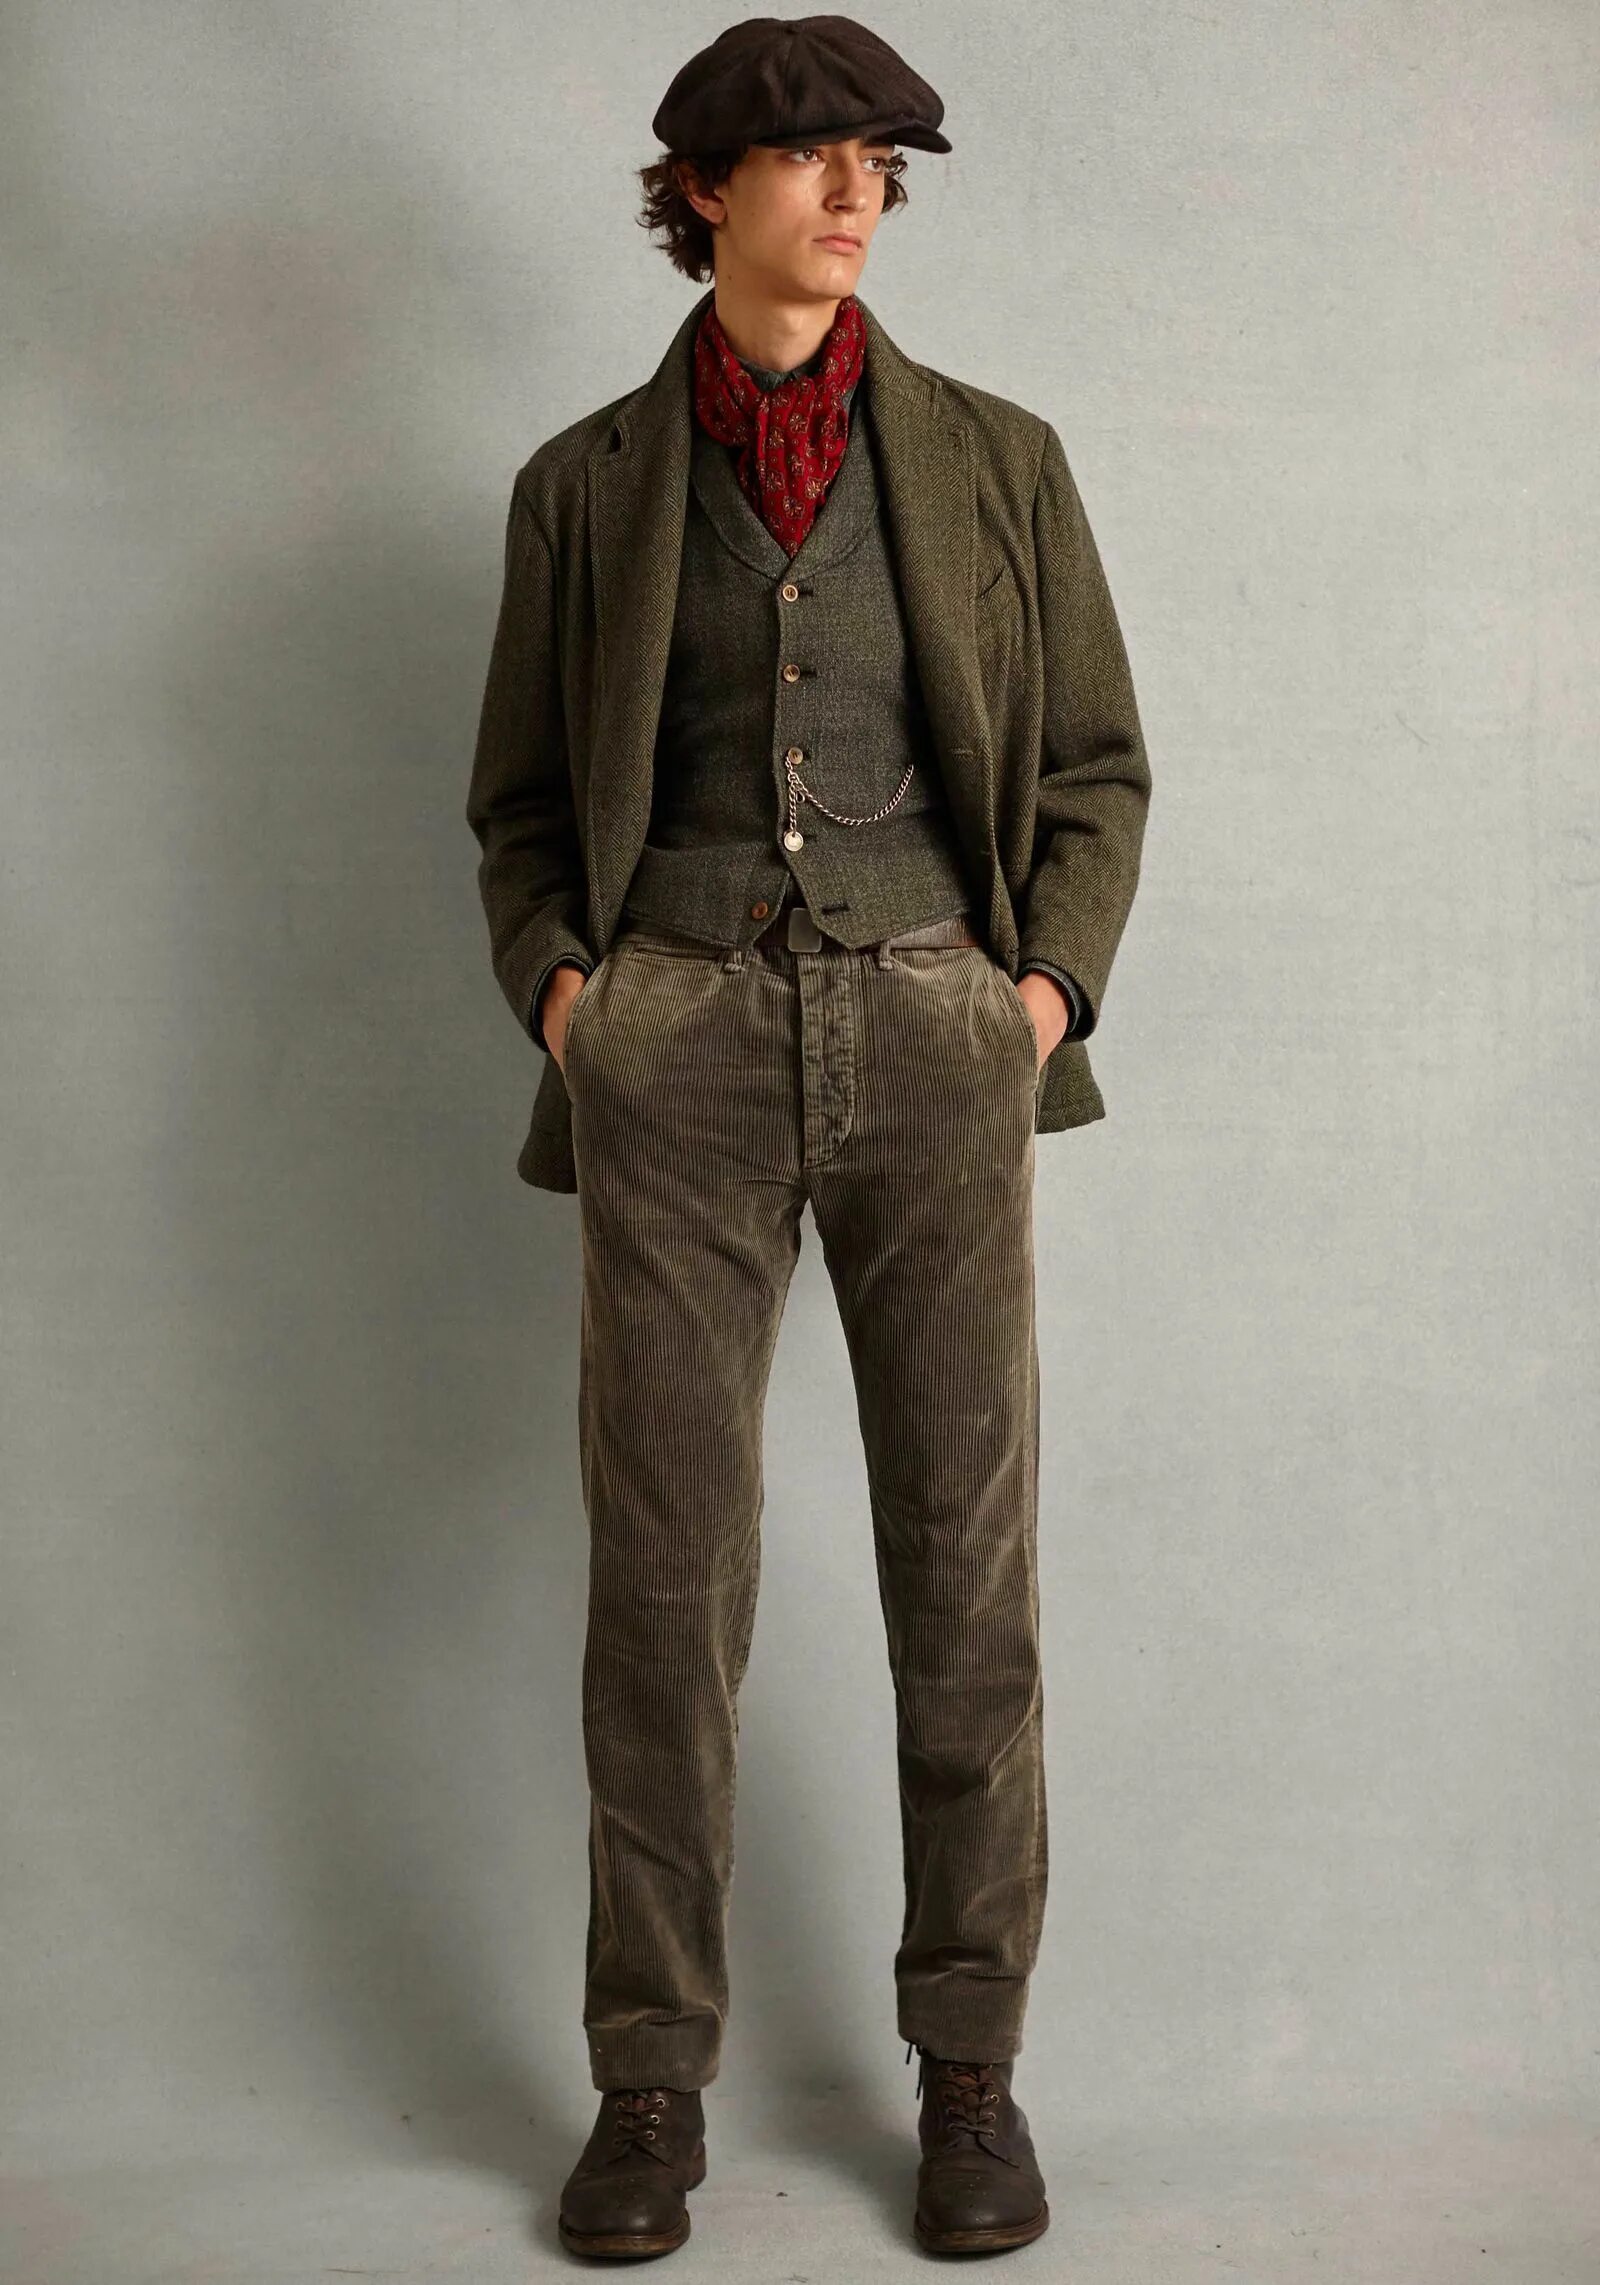 Старый мужской костюм. Ретро одежда для мужчин. Винтажная одежда для мужчин. Старомодный стиль одежды. Мужская одежда в винтажном стиле.